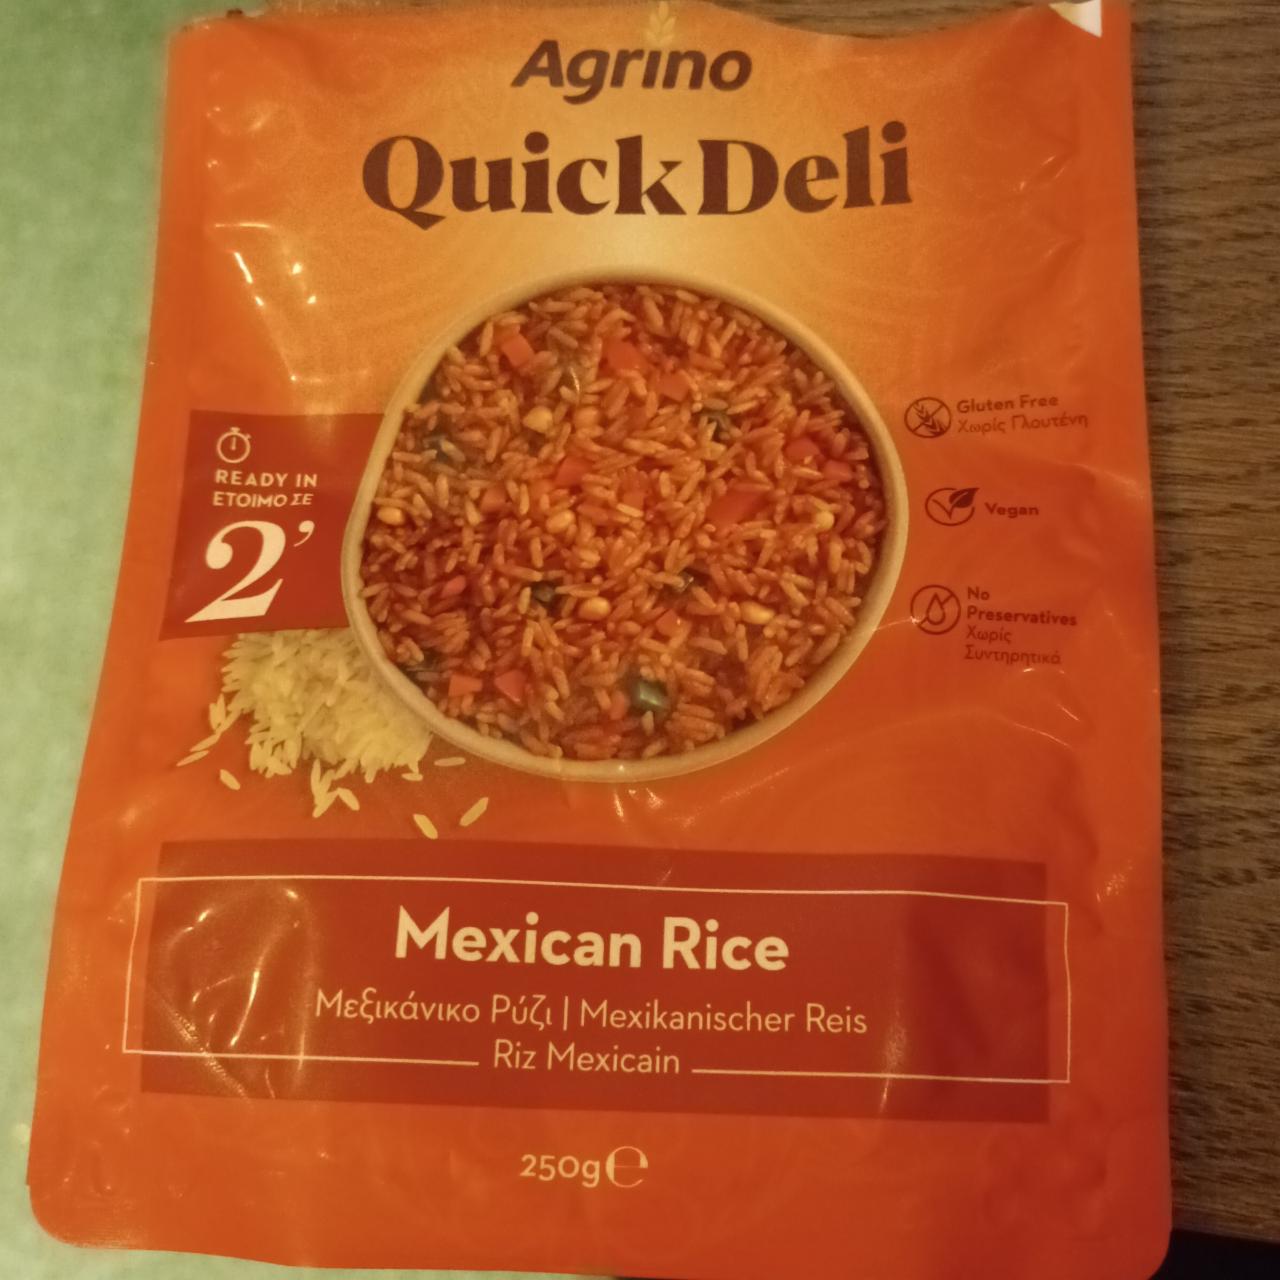 Fotografie - Quick Deli Mexican Rice Agrino